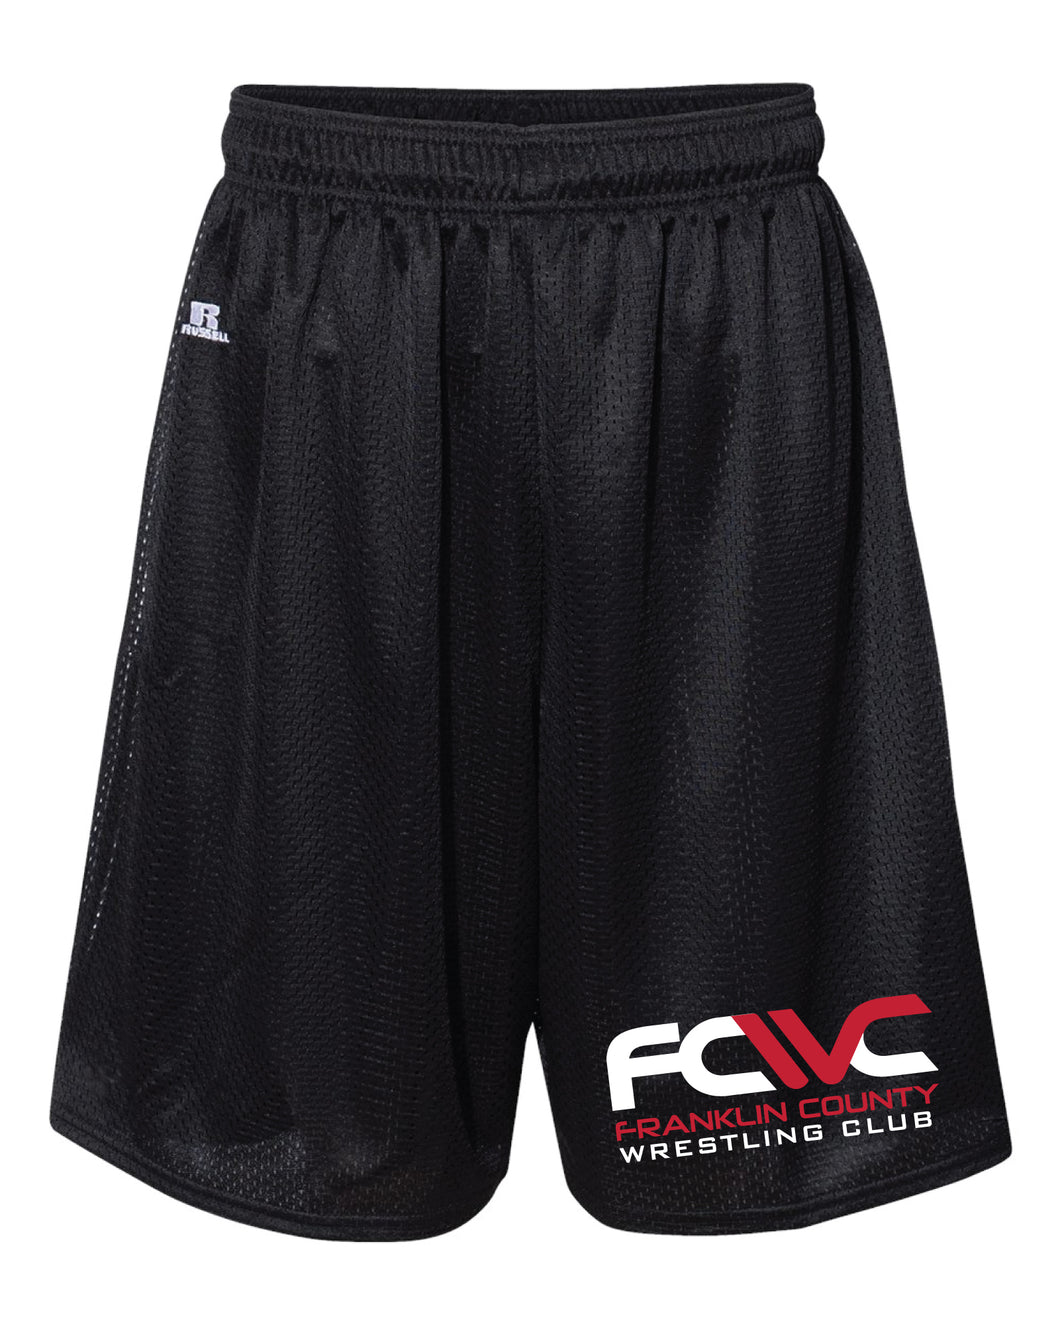 Eagles Wrestling Athletic Tech Shorts - Black - 5KounT